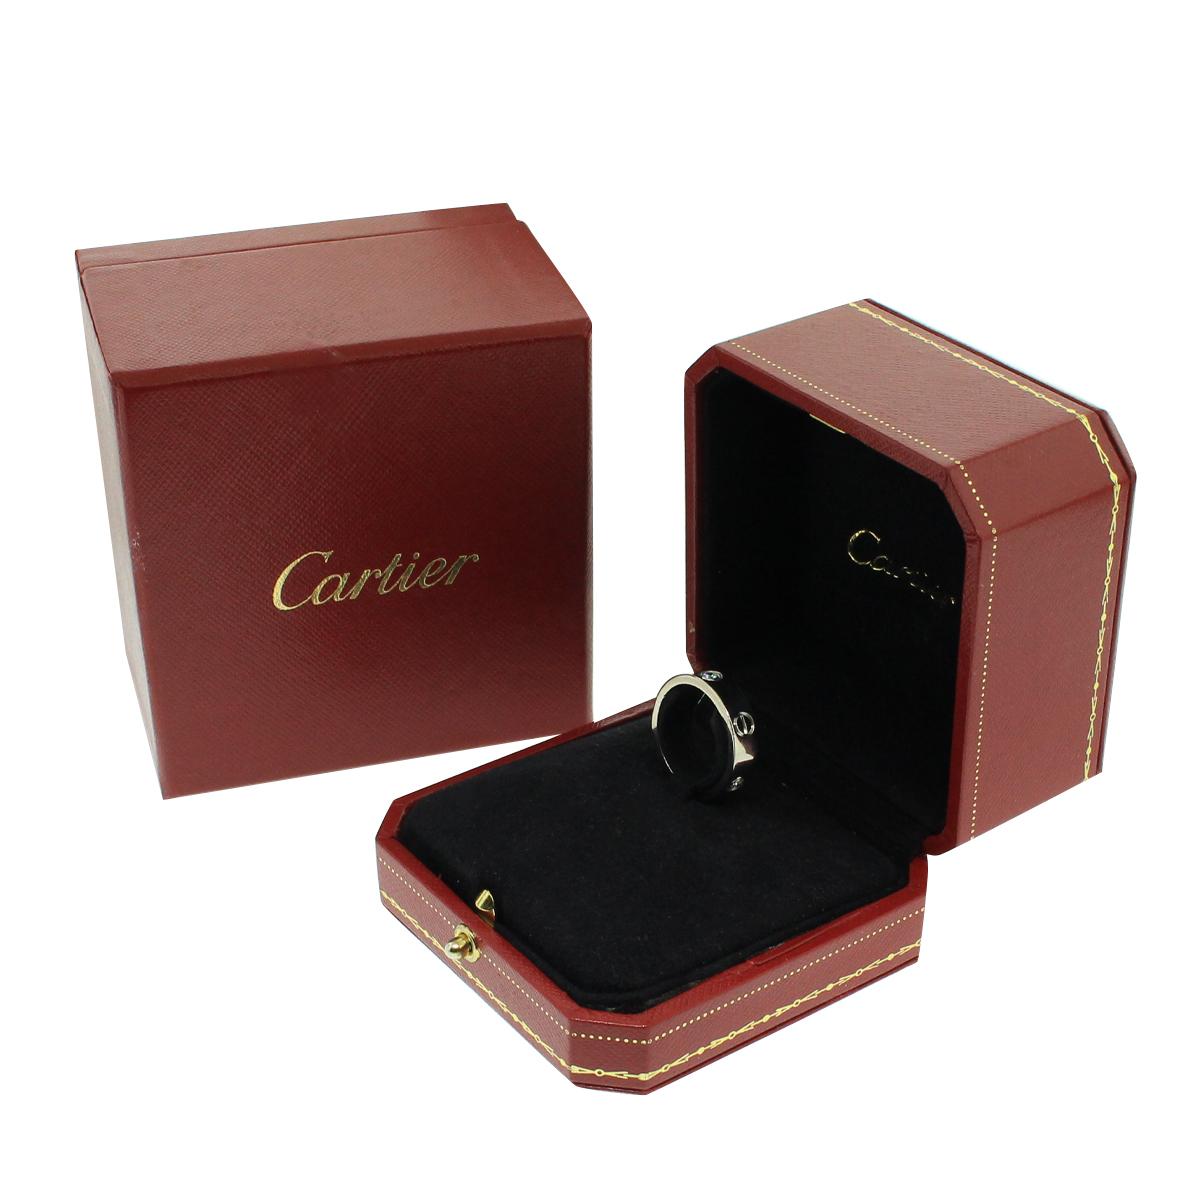 Women's or Men's Cartier Diamond Love Ring